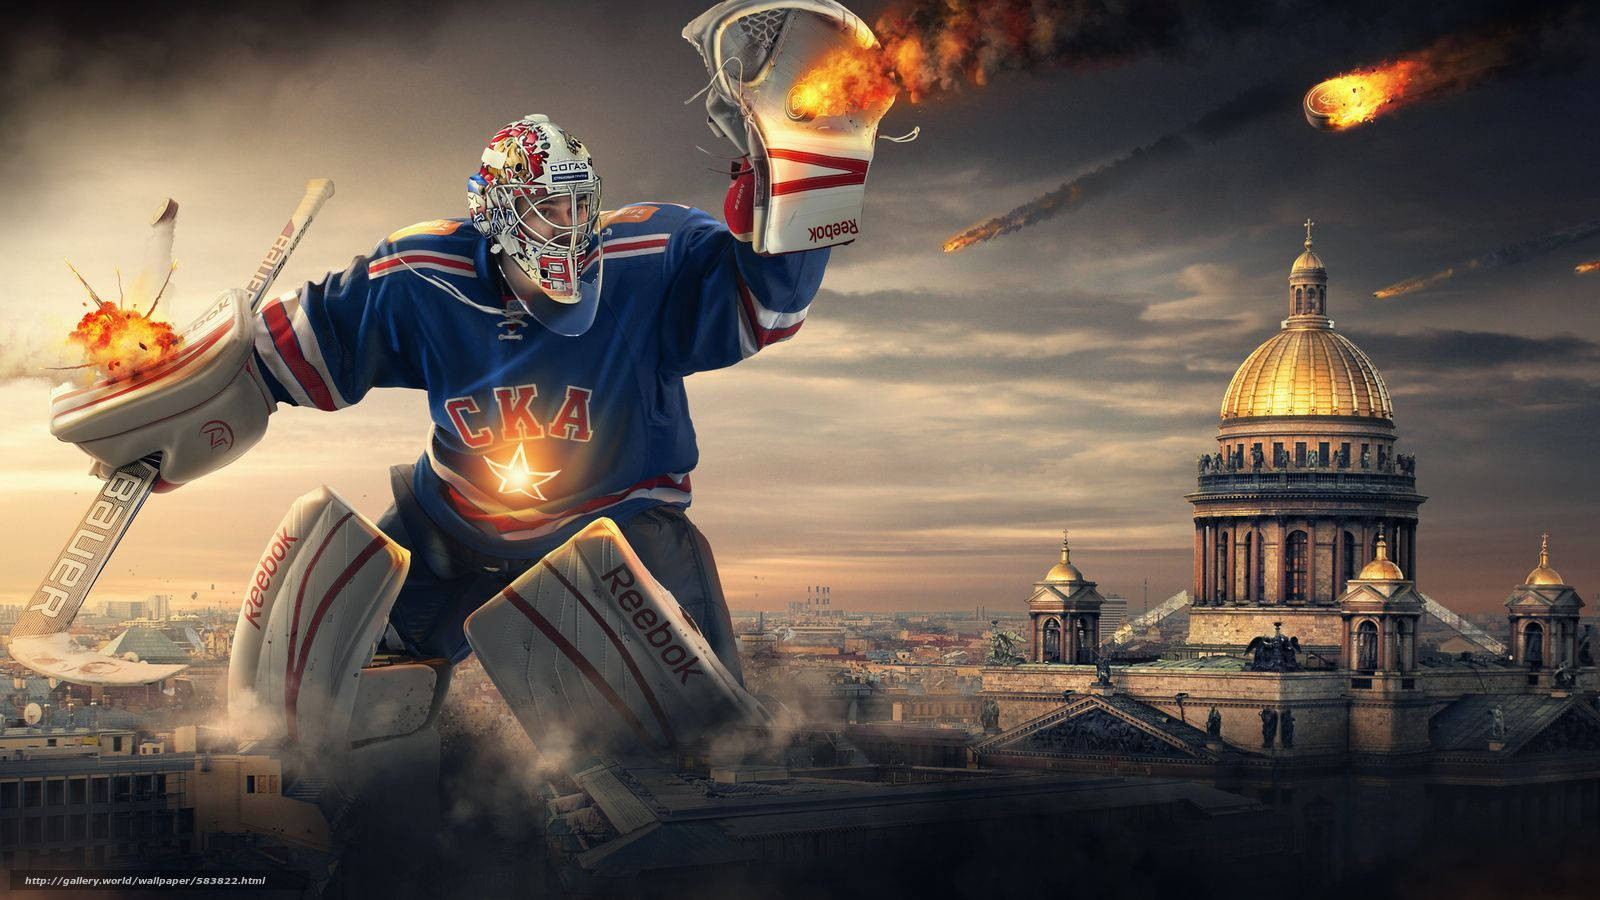 Diseñográfico De Un Portero De Hockey Sobre Hielo Del Ska De San Petersburgo. Fondo de pantalla